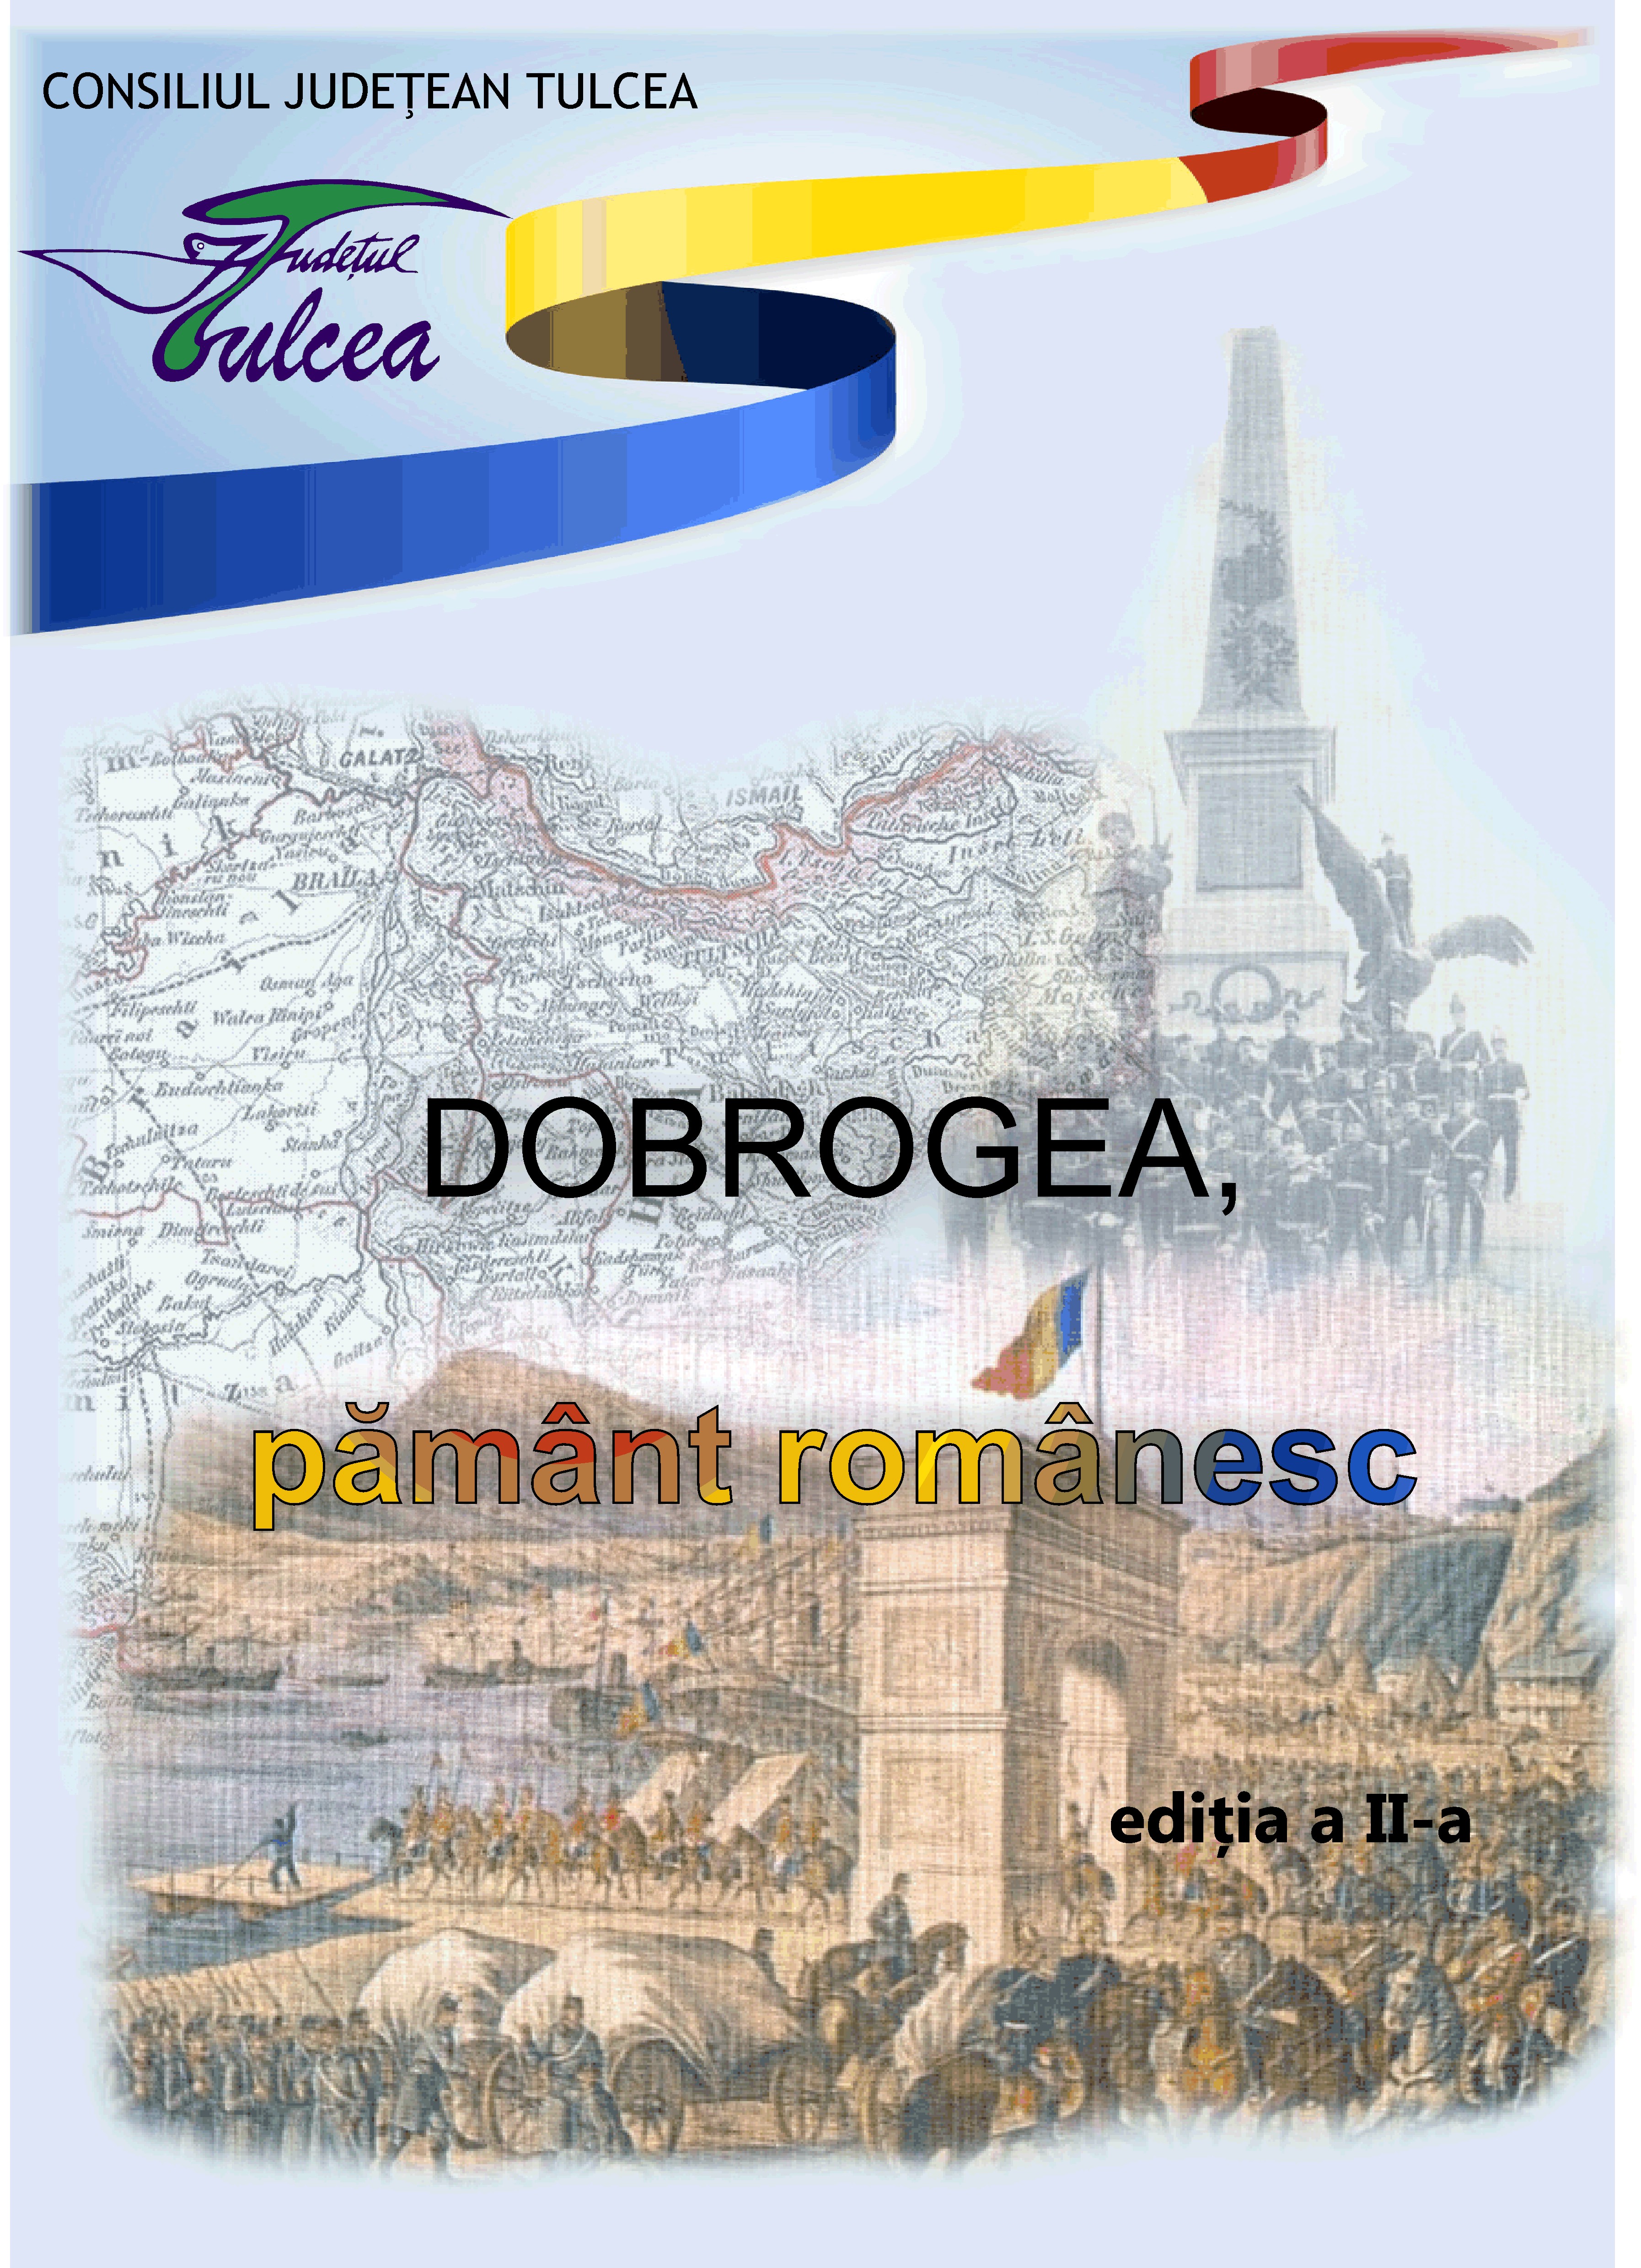 Invitație pentru elevii tulceni:  Concursul „Dobrogea, pământ românesc“ a ajuns la a doua ediție